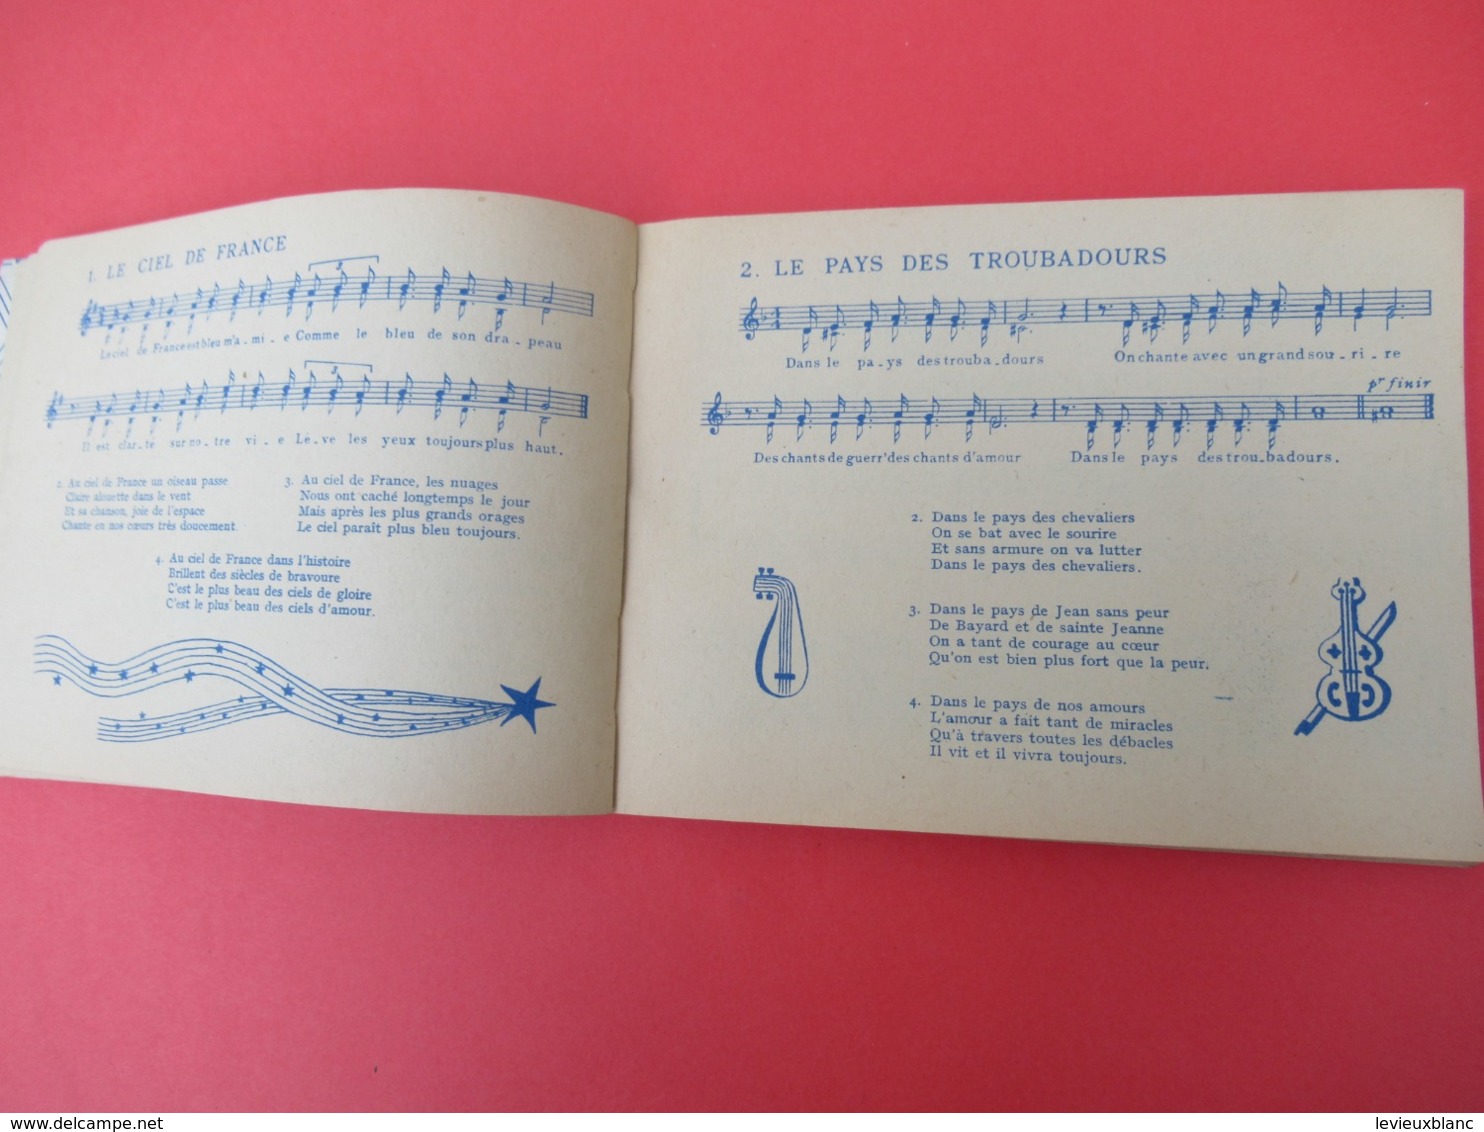 Livrede Chants / CIELS De FRANCE/ Chansons Inédites De Francine COCKENPOT/Ed Du Seuil//1947           PART272 - Andere & Zonder Classificatie